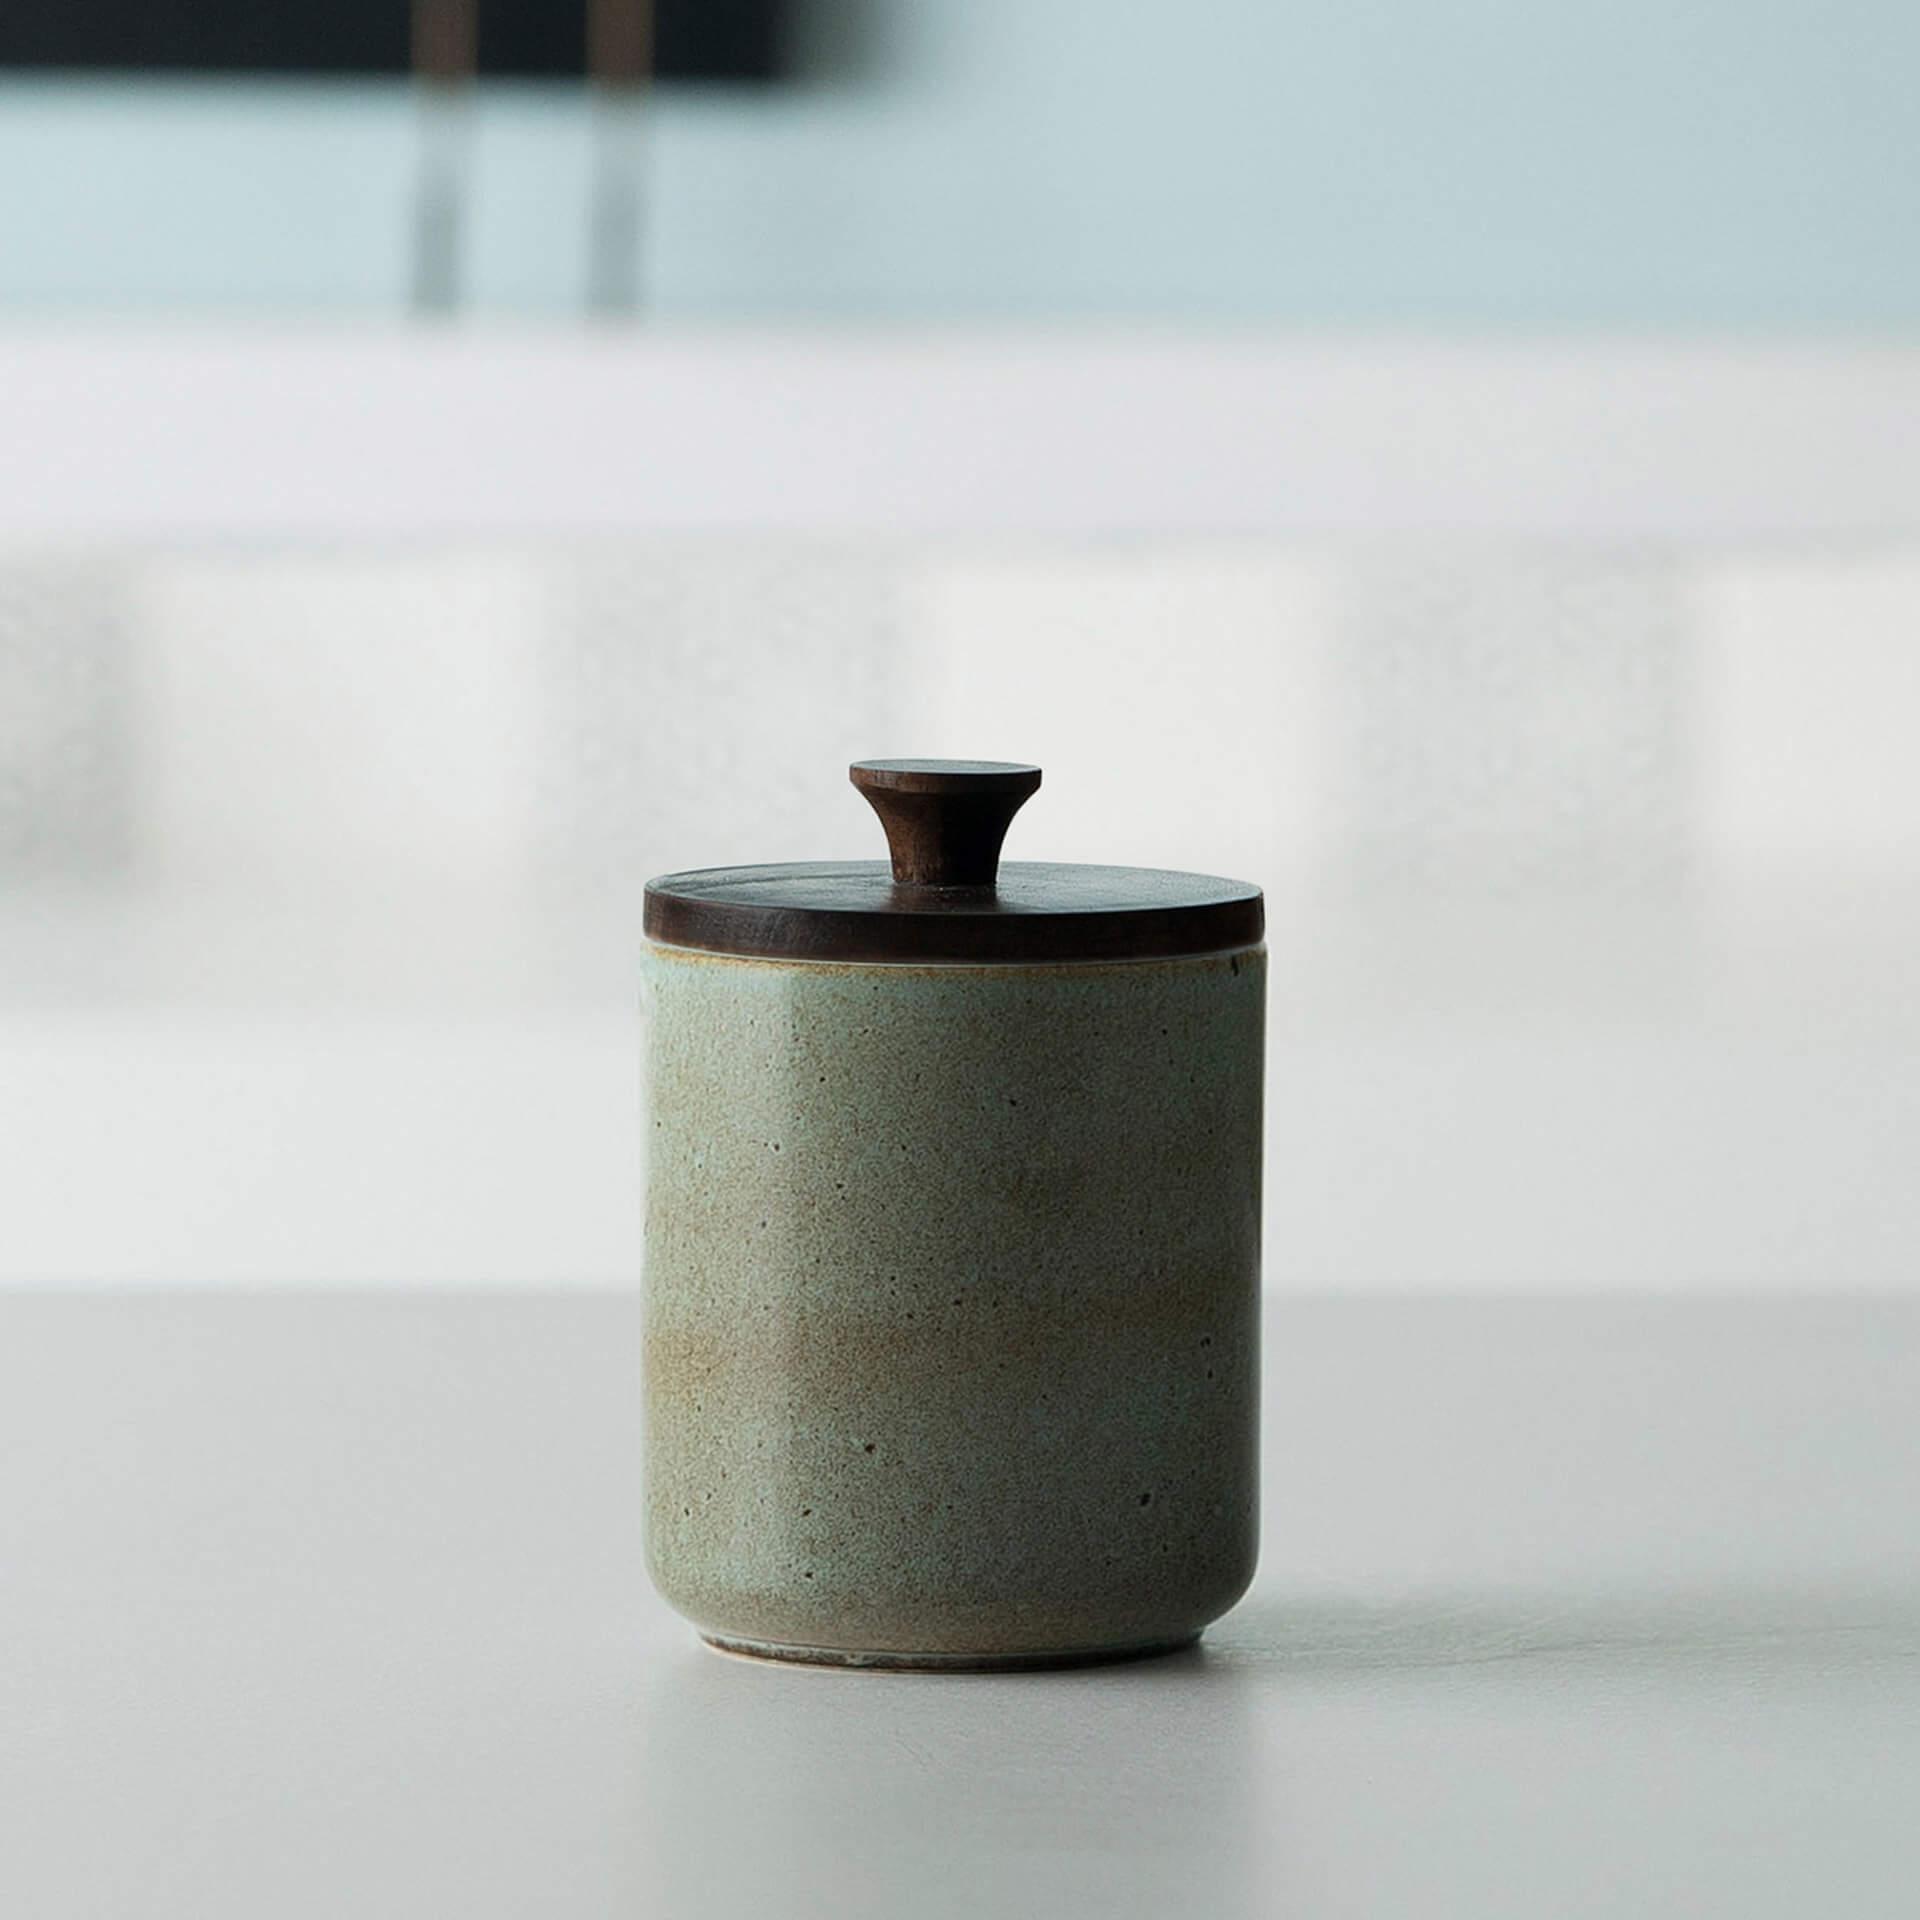 aqua rustic ceramic jar with wooden lid- small